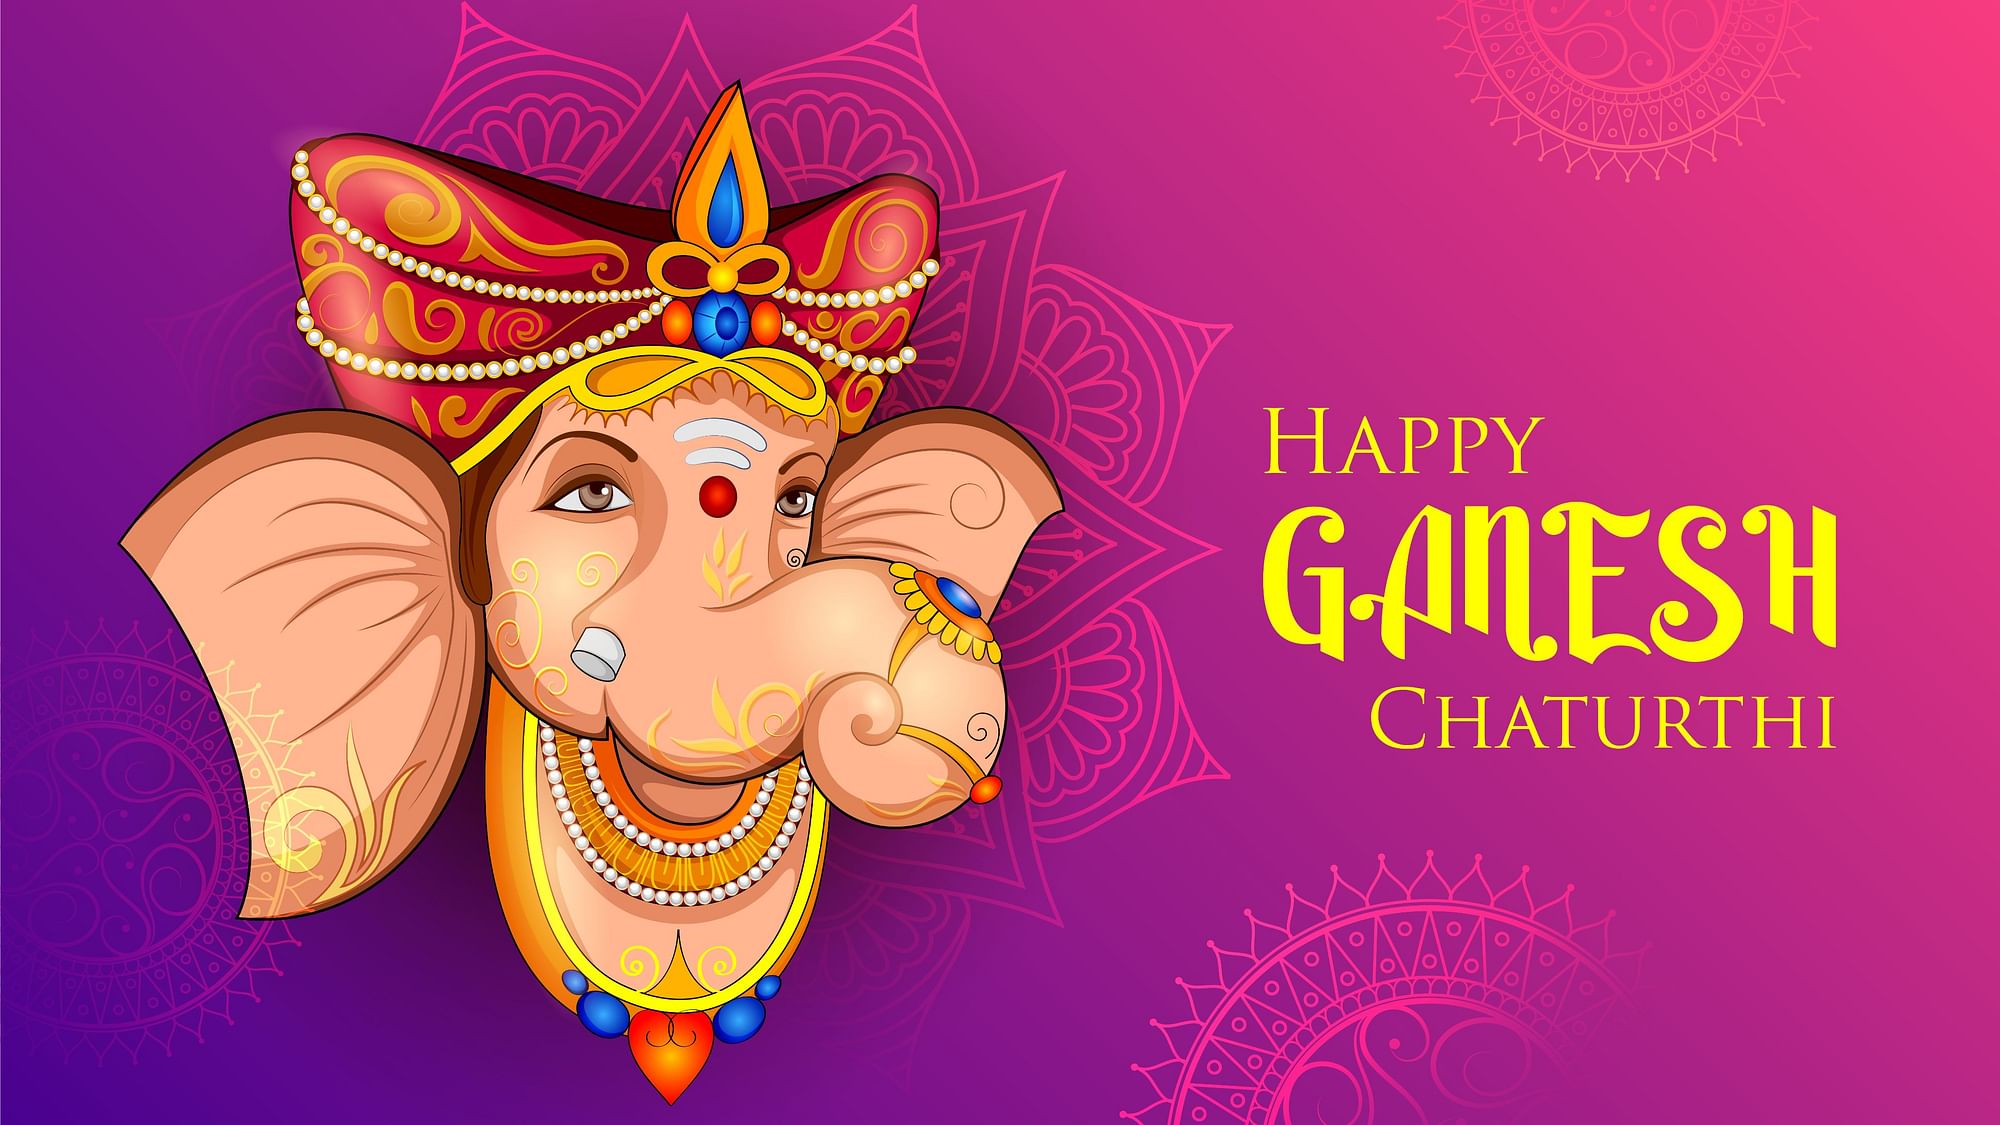 Ganesh Chaturthi 2020 Wishes In English Hindi Happy Ganesh Utsav Wishes Status Images 0441